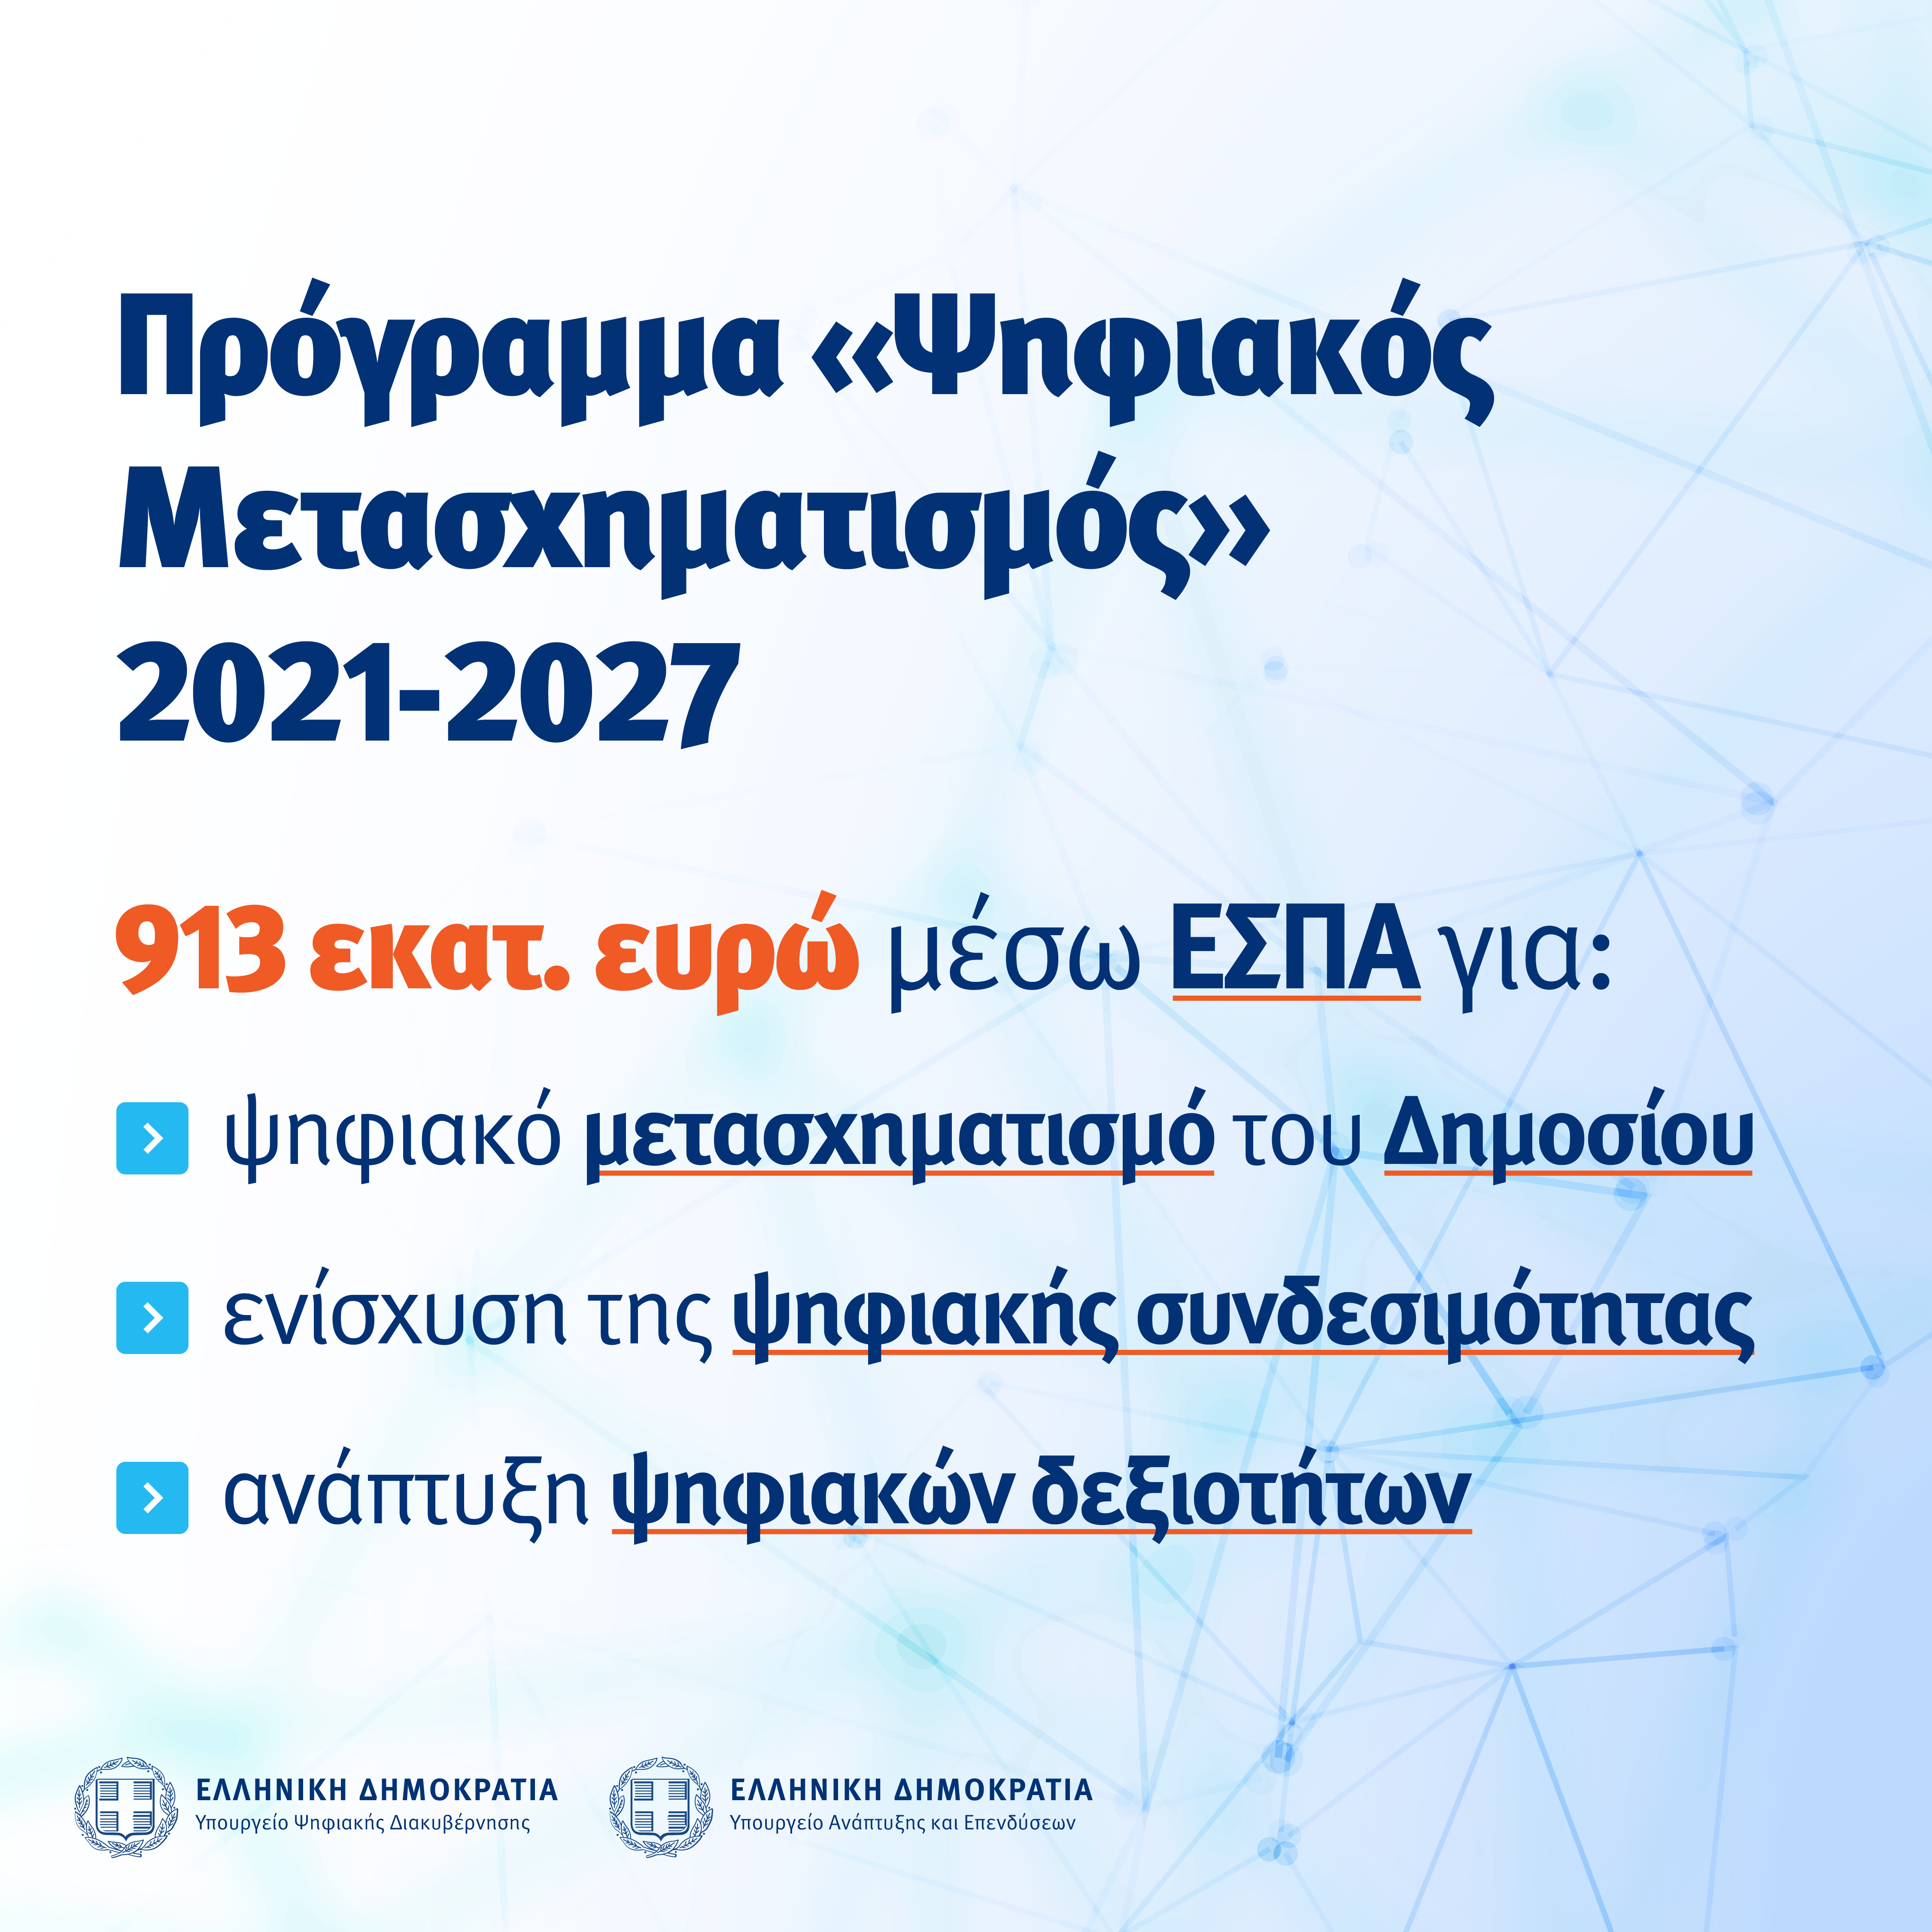 Εγκρίθηκε το Επιχειρησιακό Πρόγραμμα «Ψηφιακός Μετασχηματισμός» 2021-2027